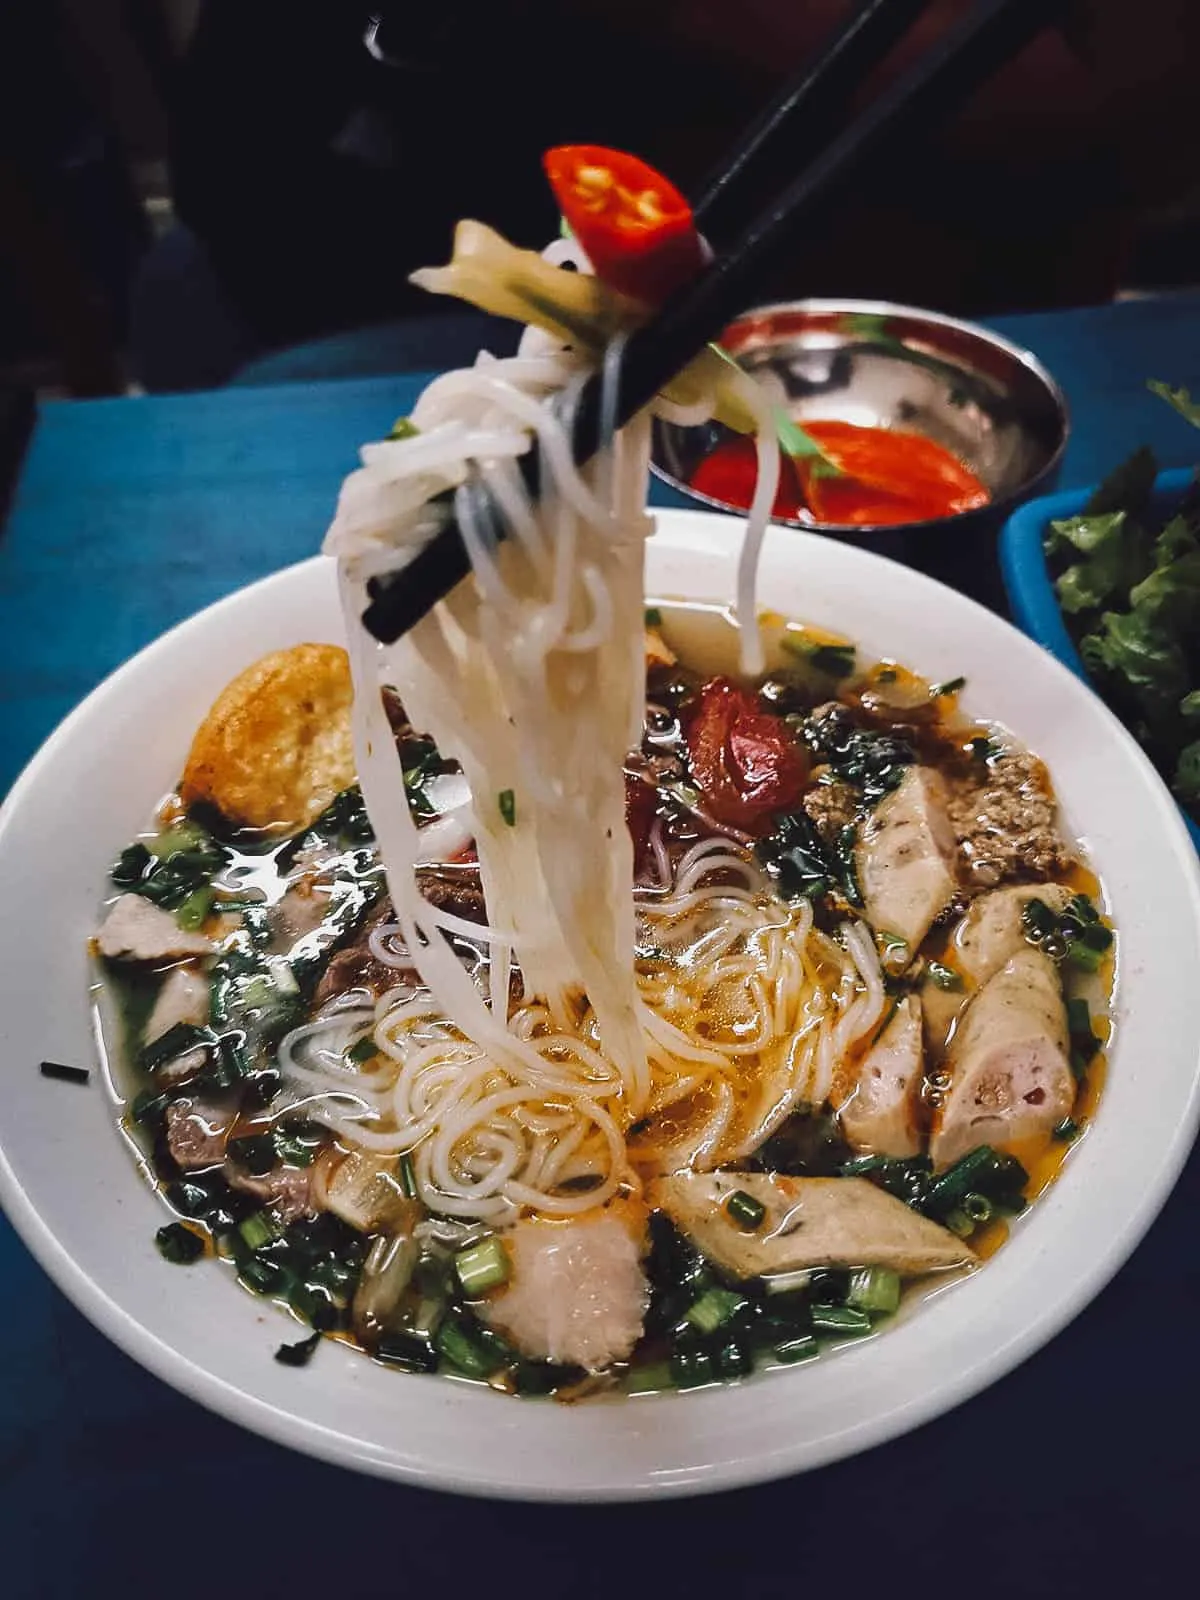 Bun rieu in Hanoi, a delicious Vietnamese noodle soup made with crab